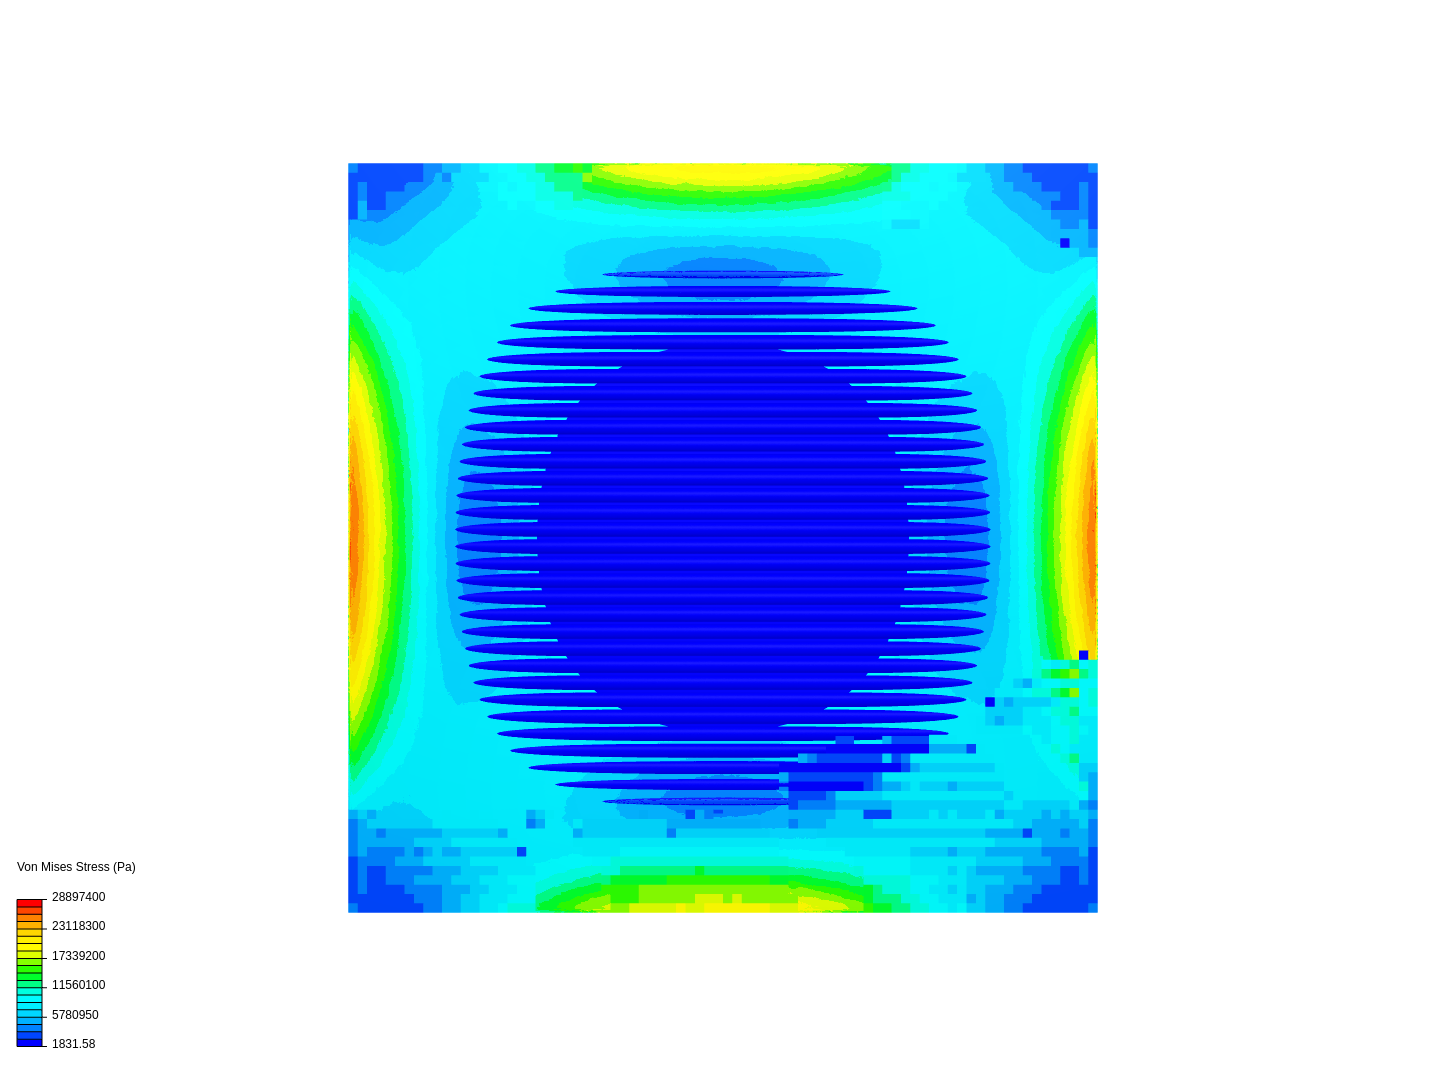 w8. 3. semicircle_diameter0.4_spacing0.1 image